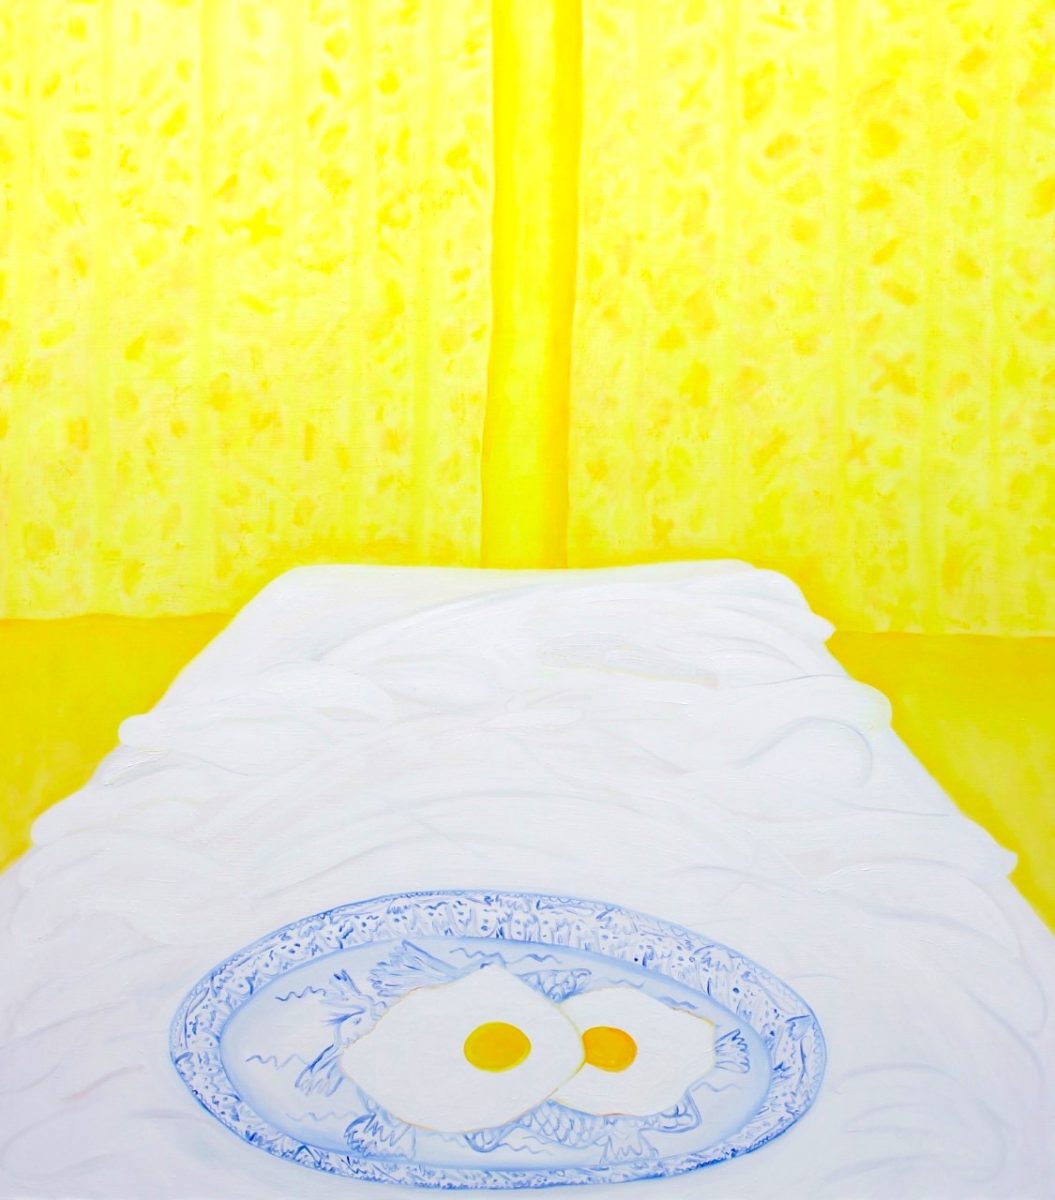 Ellie MacGarry, Eggs in Bed, 2019